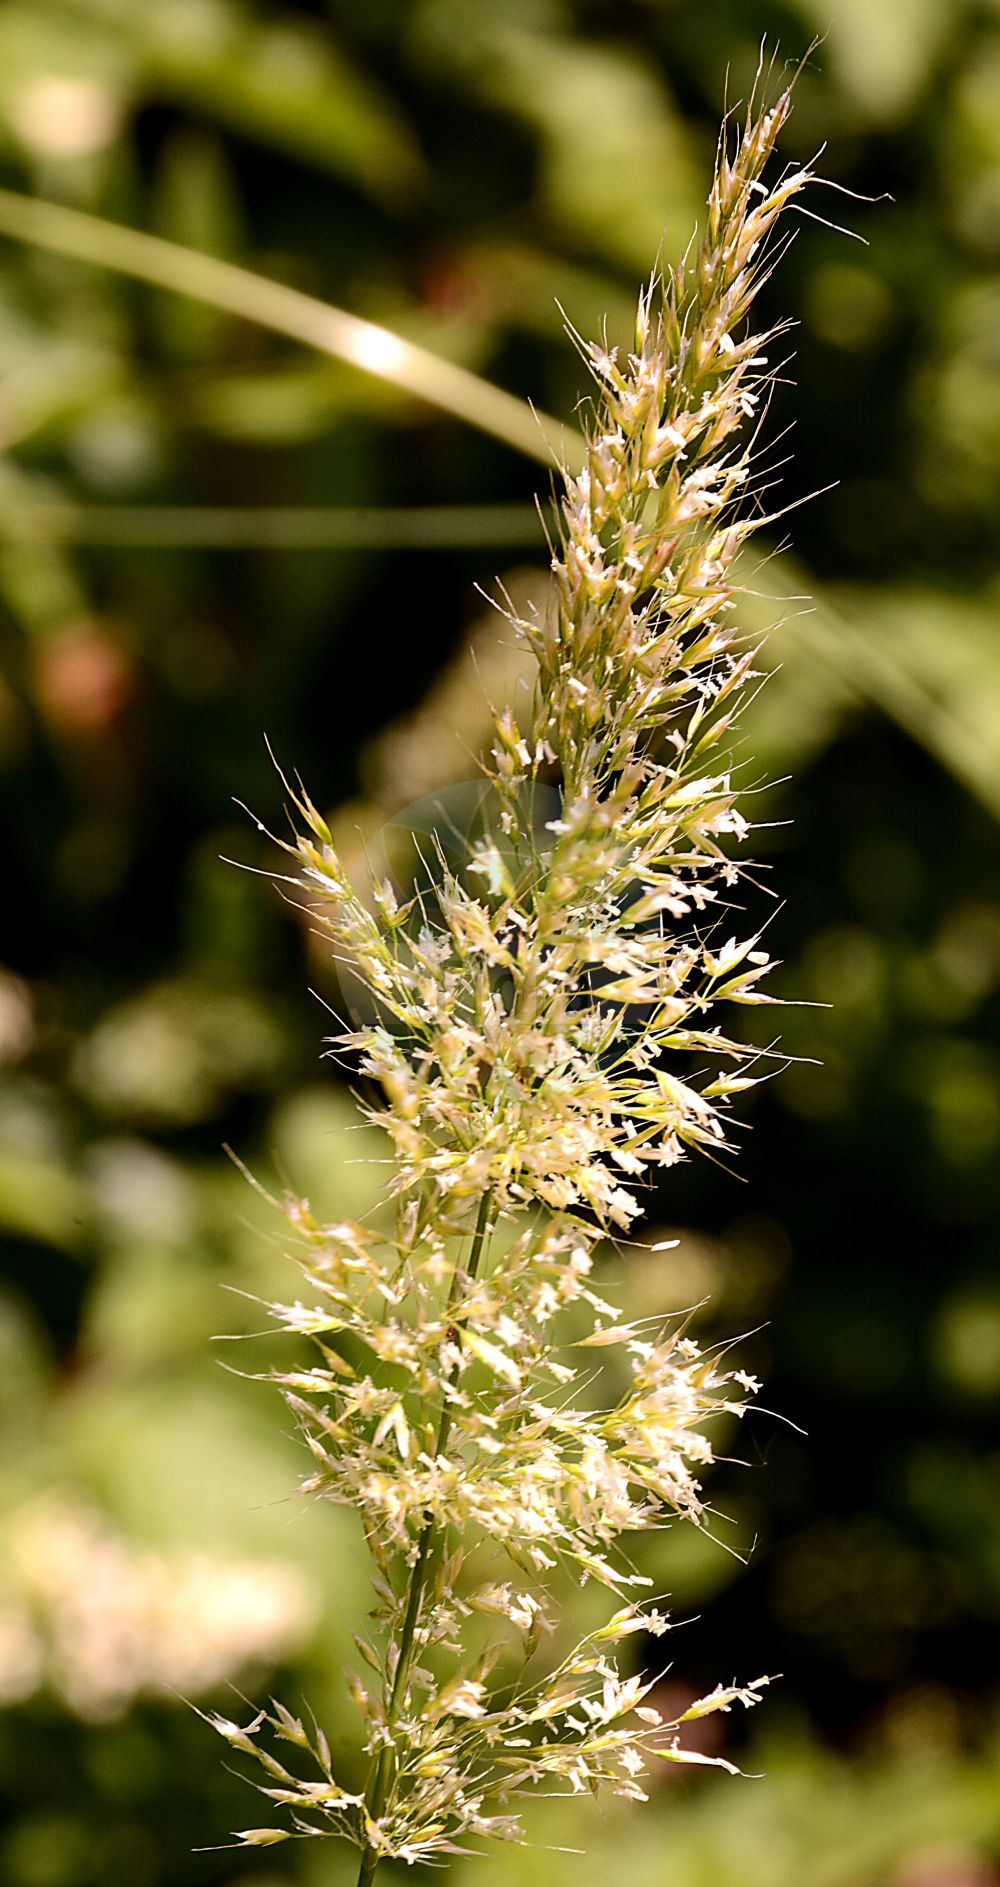 Foto von Trisetum flavescens (Wiesen-Goldhafer - Yellow Oat-grass). ---- Photo of Trisetum flavescens (Wiesen-Goldhafer - Yellow Oat-grass).(Trisetum flavescens,Wiesen-Goldhafer,Yellow Oat-grass,Avena flavescens,Trisetaria flavescens,Trisetum flavescens,Trisetum griseovirens,Trisetum macrantherum,Wiesen-Goldhafer,Gewoehnlicher Wiesen-Goldhafer,Gold-Grannenhafer,Yellow Oat-grass,Golden Oat,Yellow Trisetum,Trisetum,Goldhafer,Oatgrass,Poaceae,Süßgräser,Grass family)